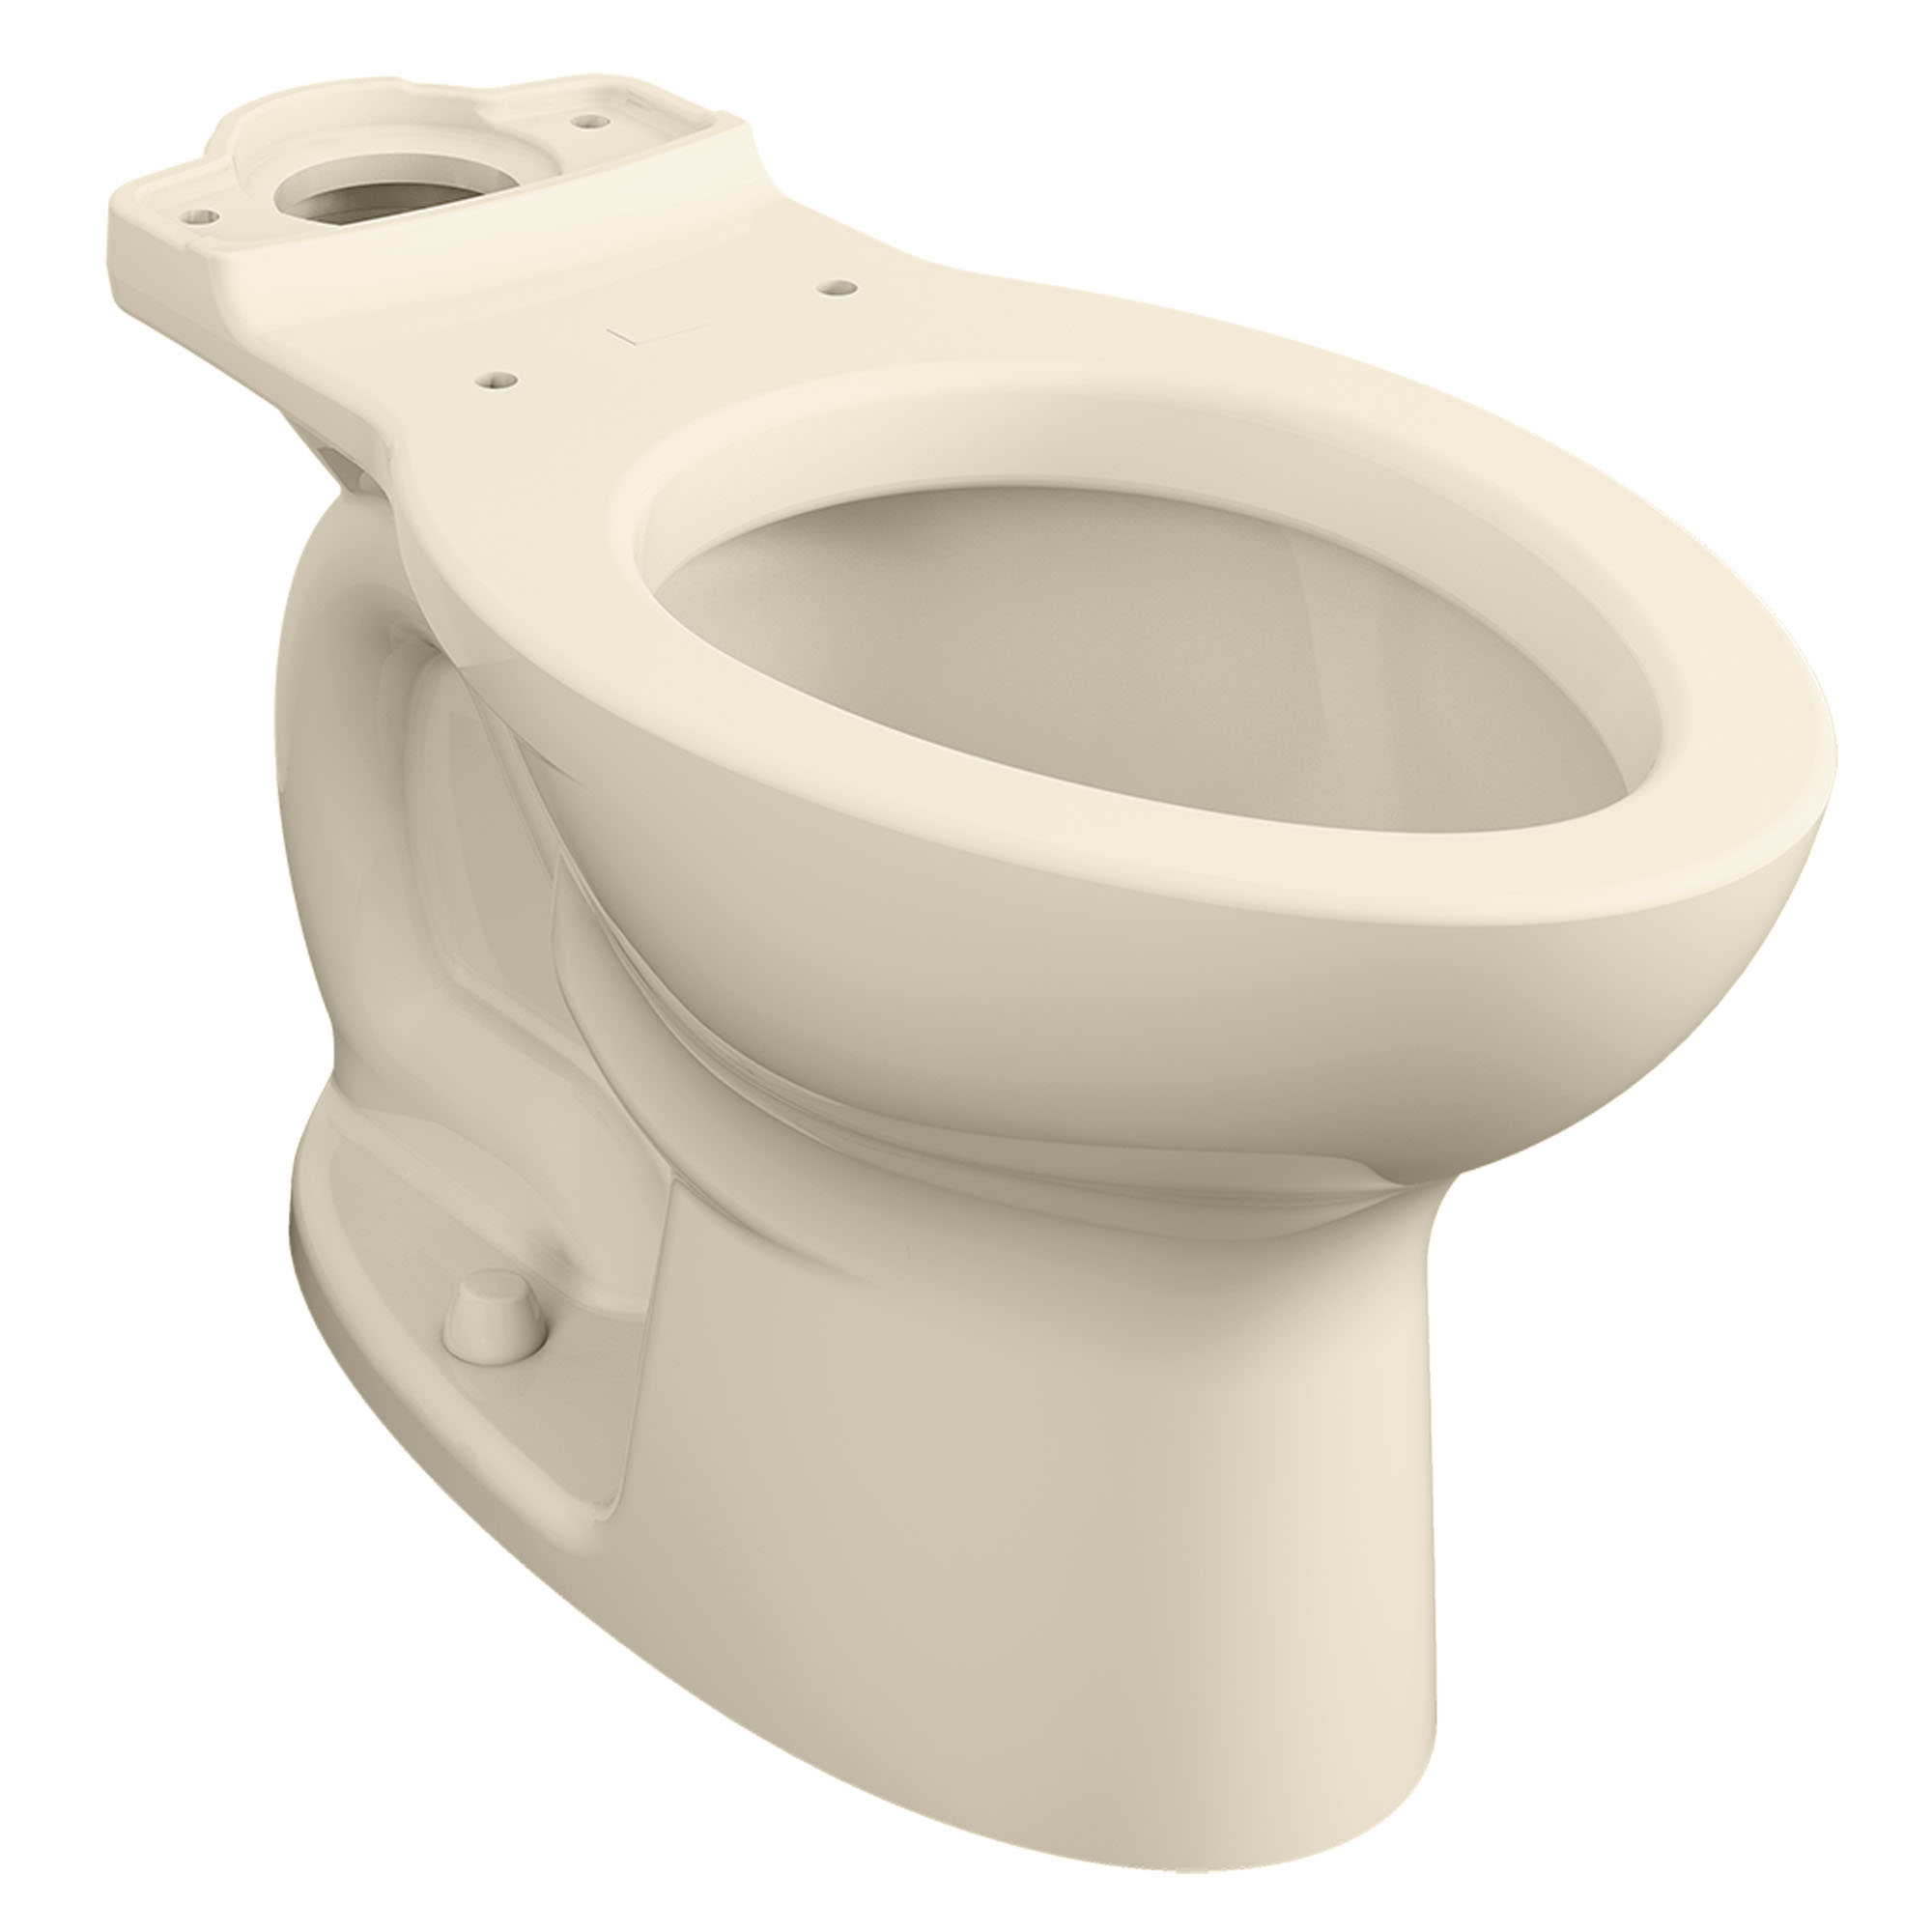 Toilette Cadet PRO, à cuvette allongée à hauteur régulière, sans siège